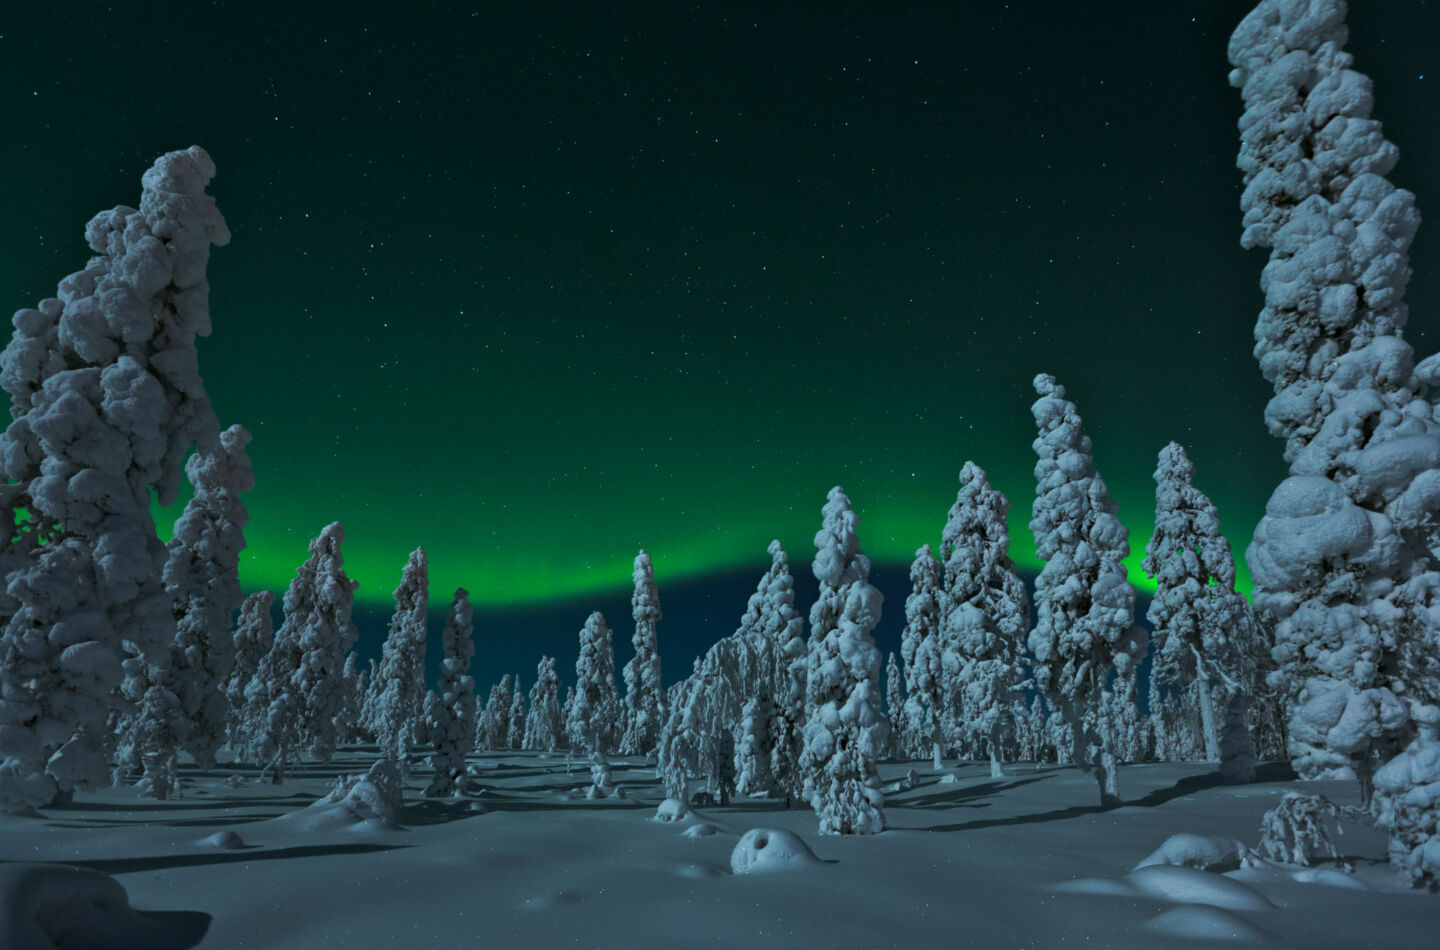 Northern Lights in winter in Rovaniemi, Finland